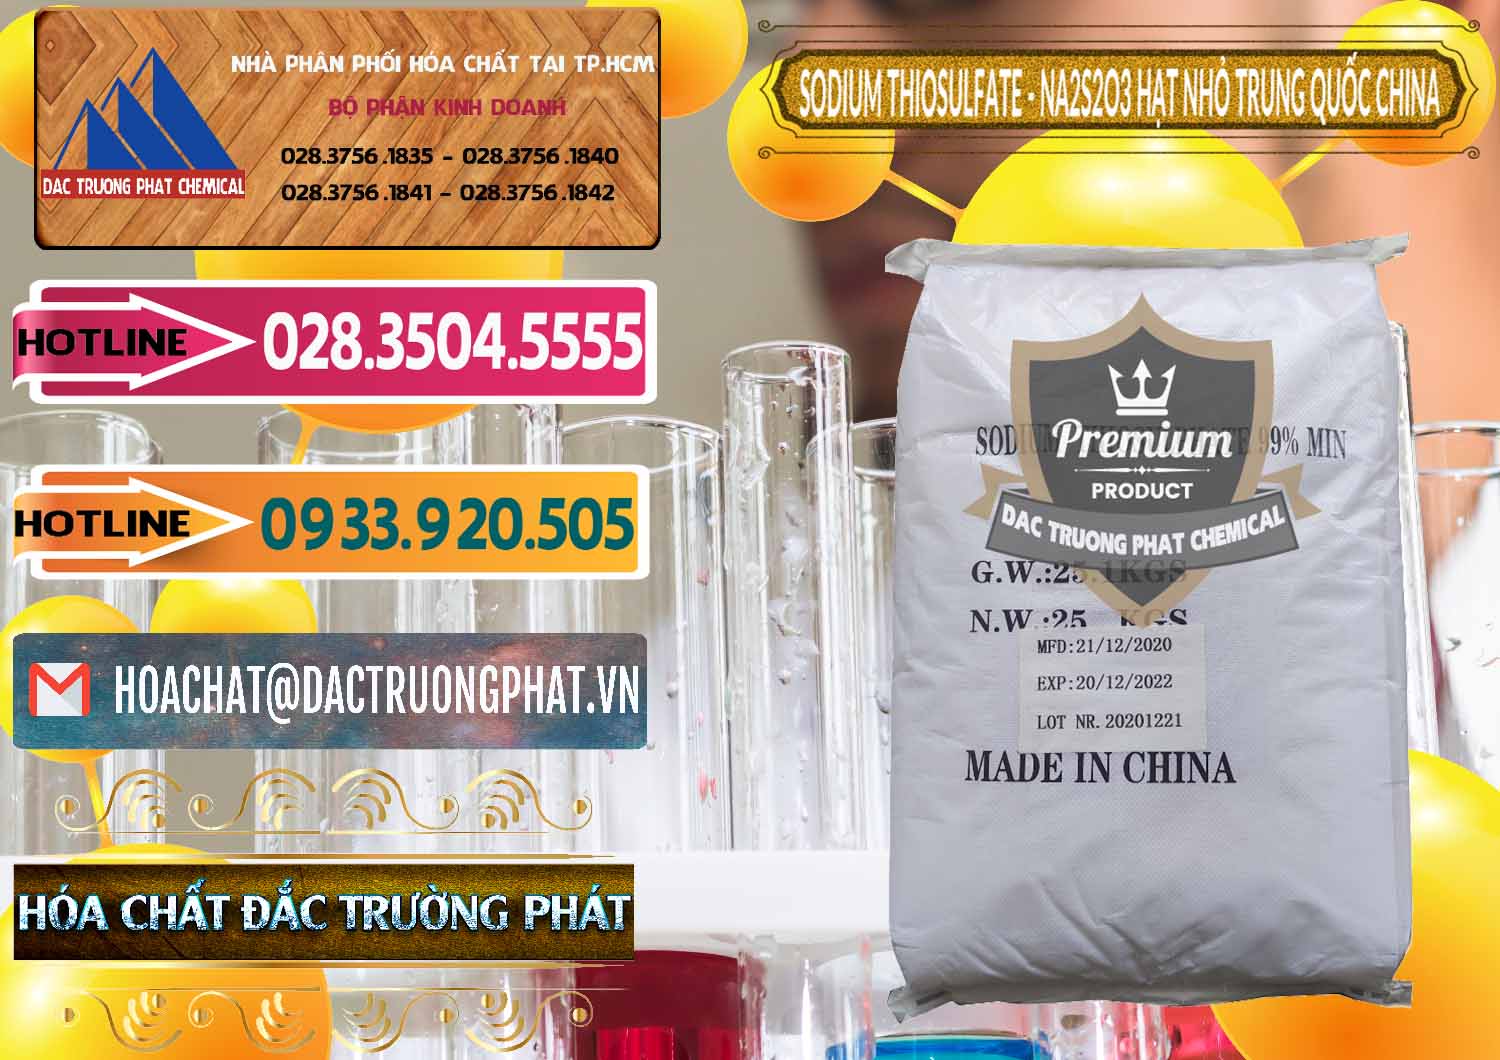 Đơn vị bán và phân phối Sodium Thiosulfate - NA2S2O3 Hạt Nhỏ Trung Quốc China - 0204 - Nhà nhập khẩu & phân phối hóa chất tại TP.HCM - dactruongphat.vn